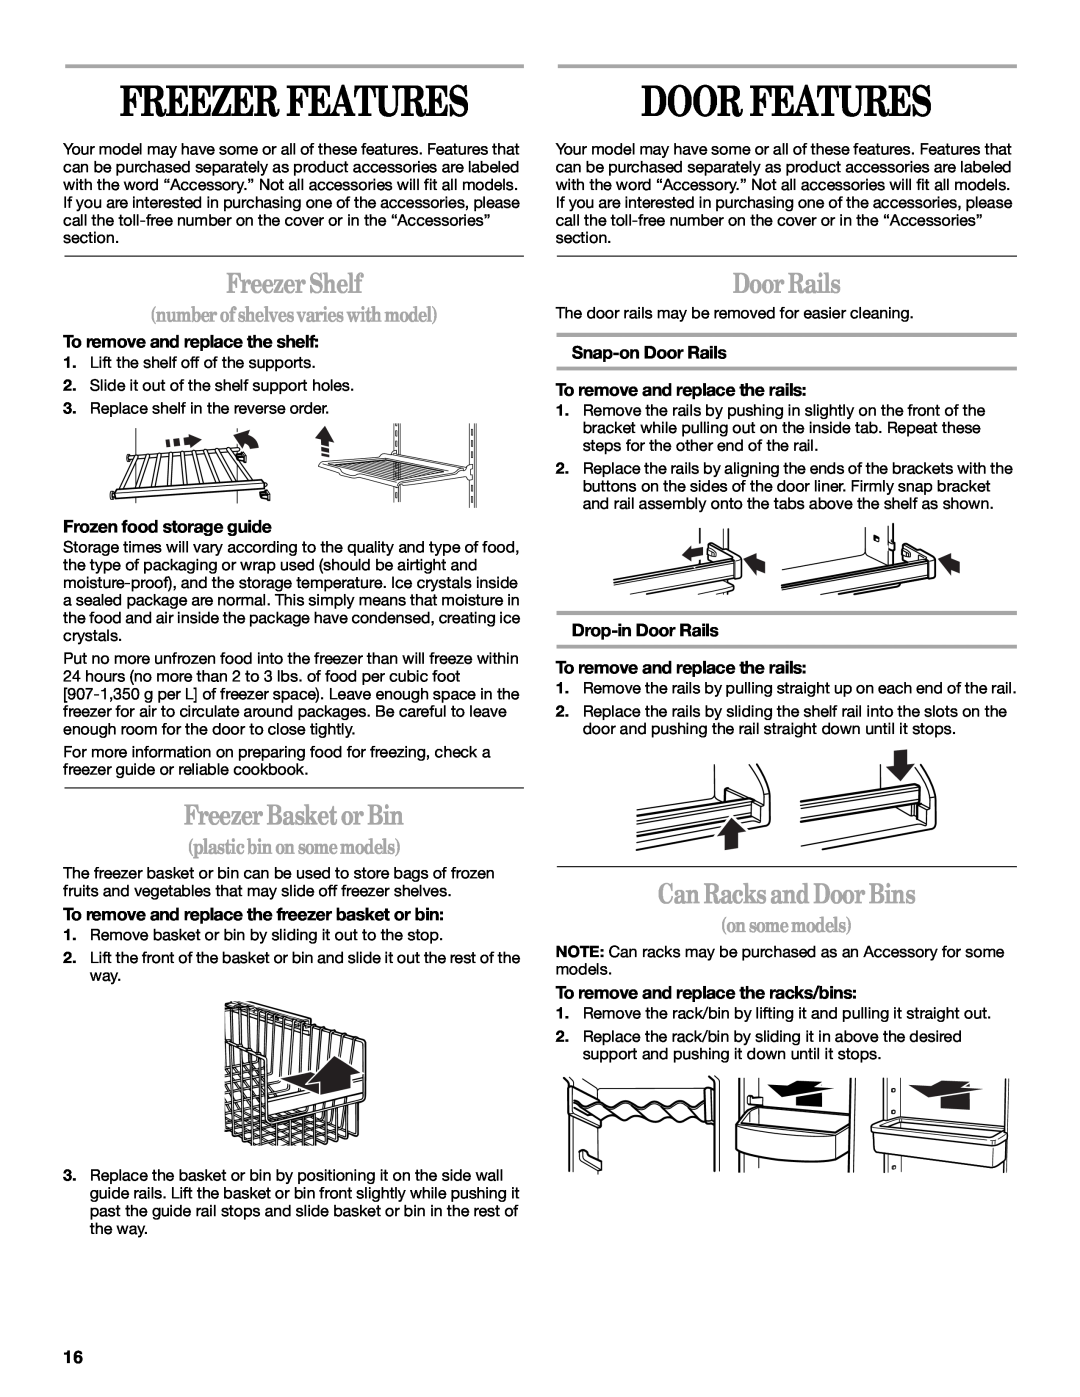 Whirlpool 5VGS7SHGKQ01 manual Freezer Features, Freezer Shelf, Freezer Basket or Bin, Door Rails, Can Racks and Door Bins 